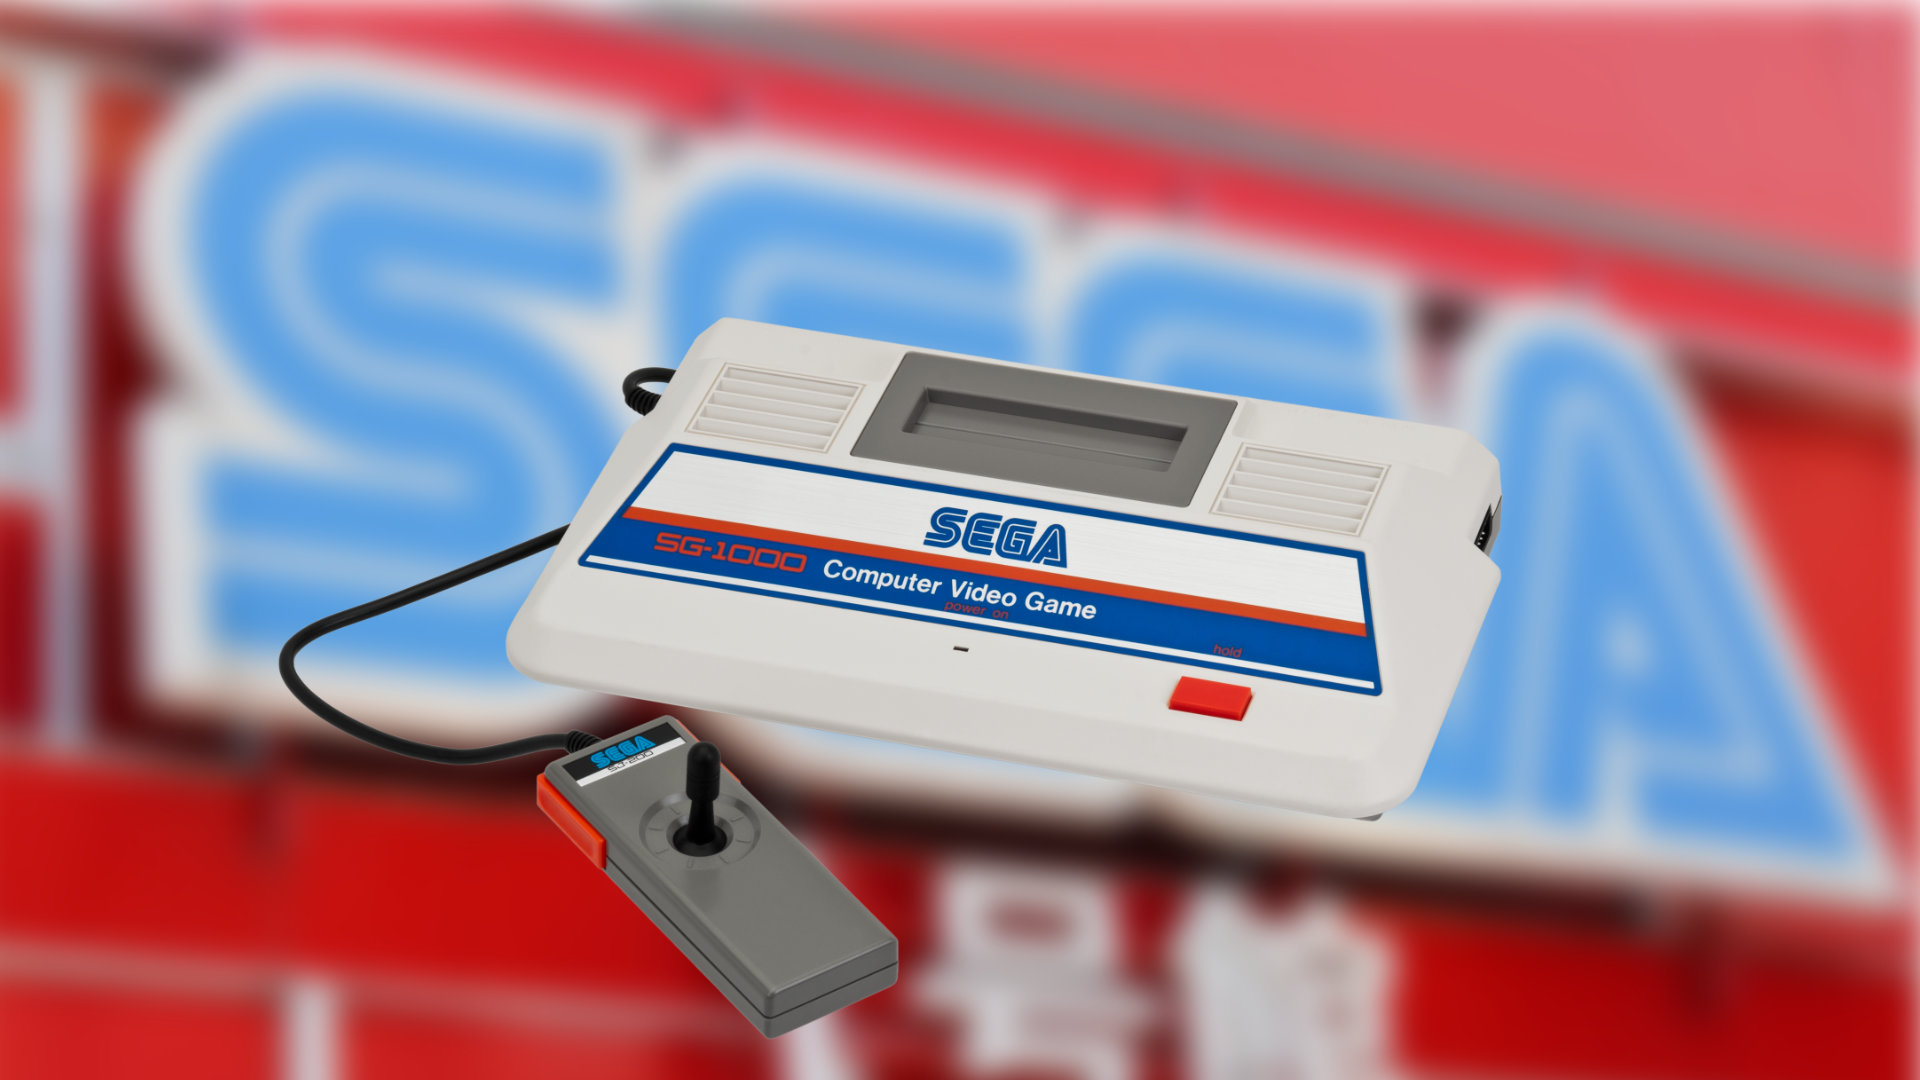 Sega: Was war die erste Sega-Konsole?